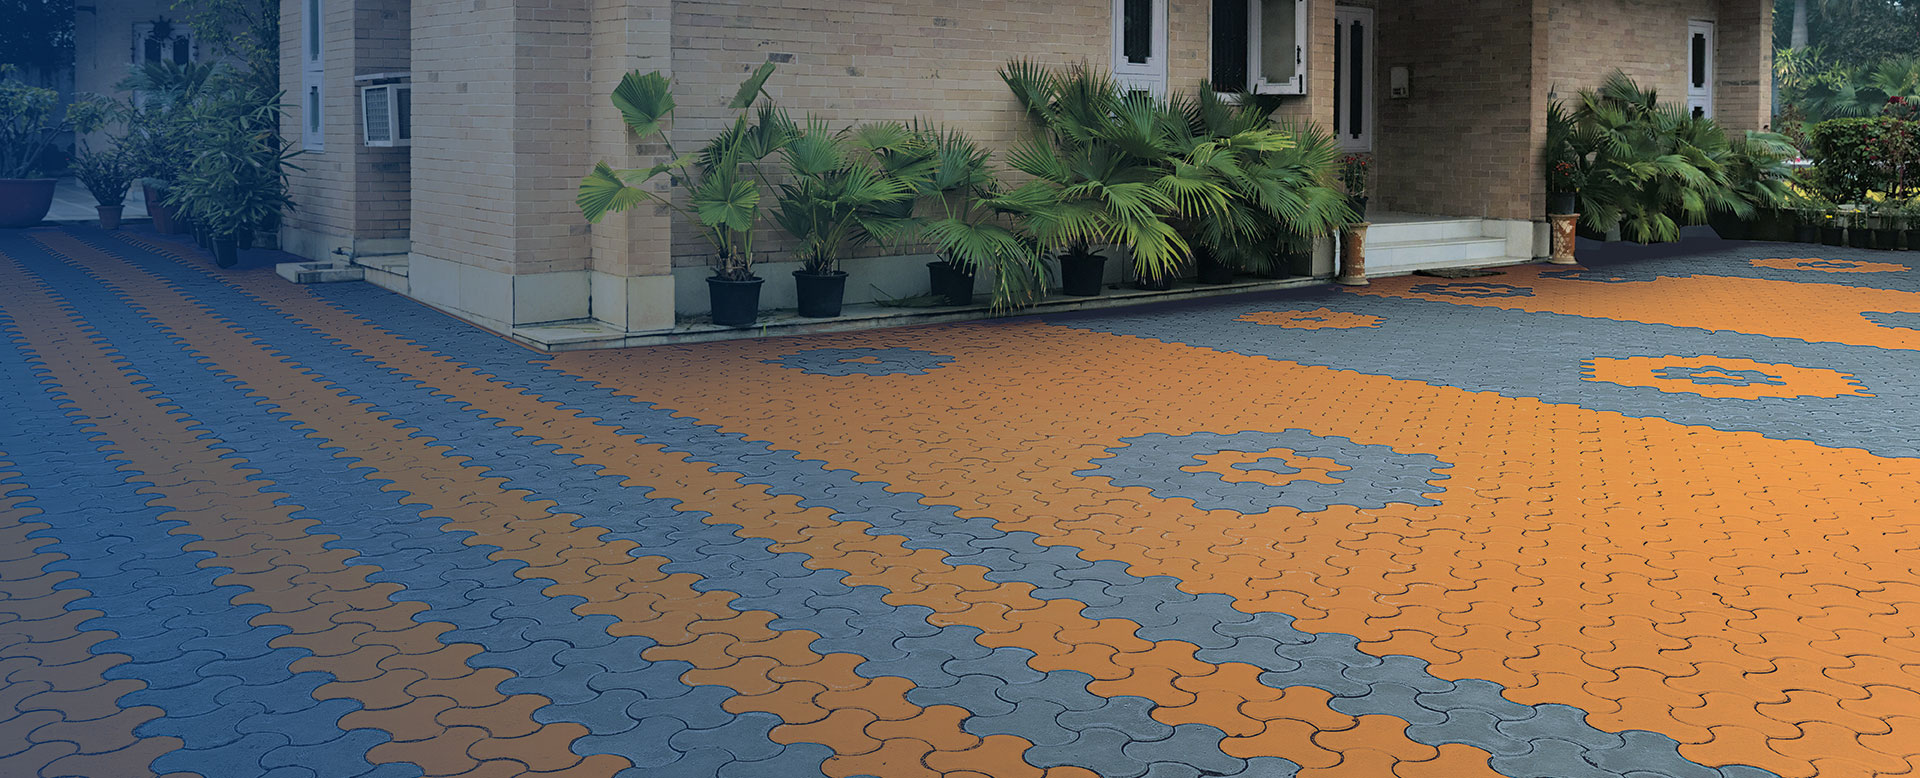 Aurus Regal Exterior Floor Coat for Paver Blocks & Cement Surface